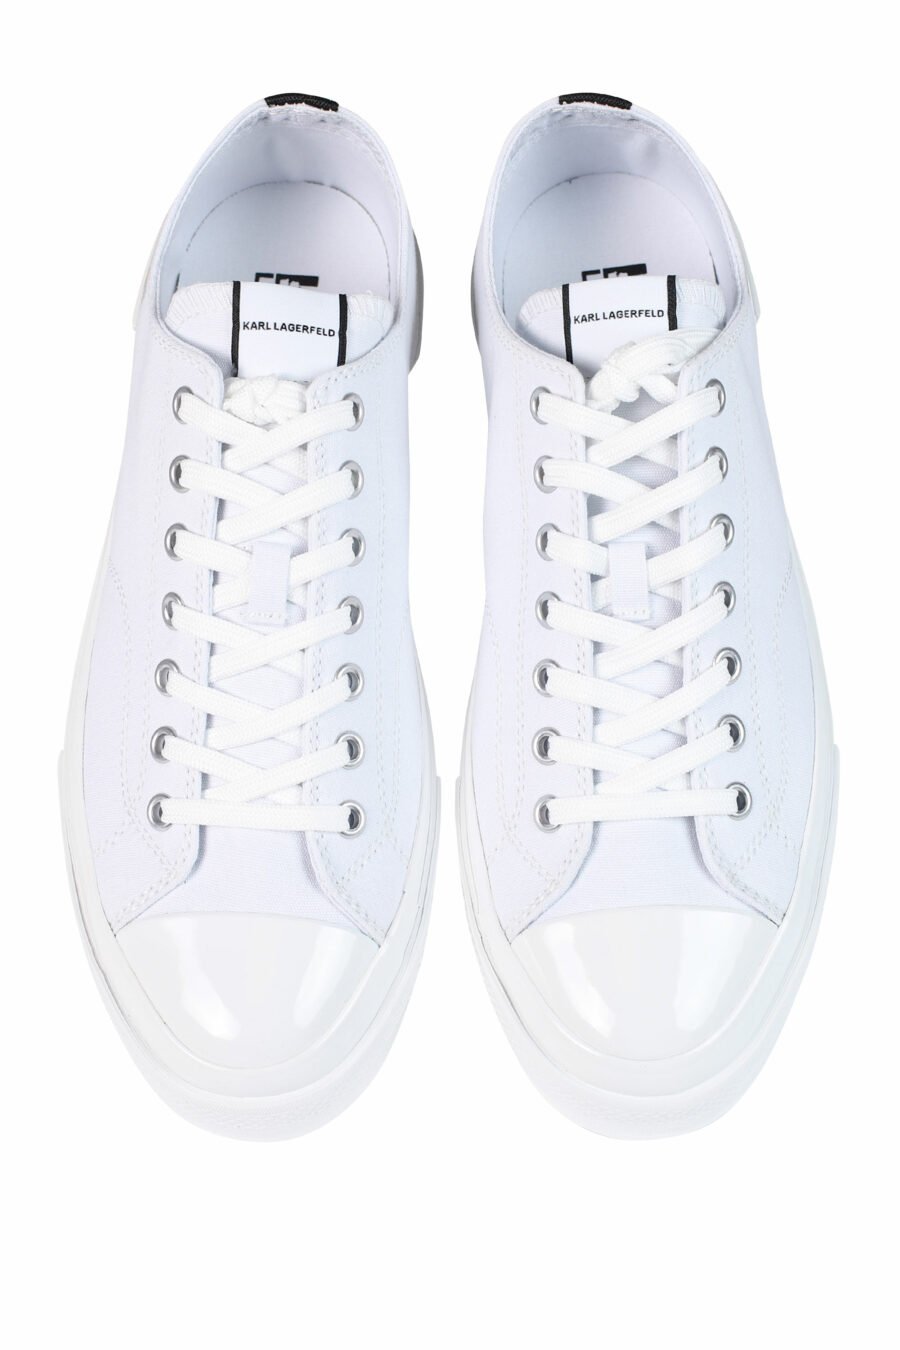 Zapatillas blancas con logo "karl" y suela blanca - 5059529249747 5